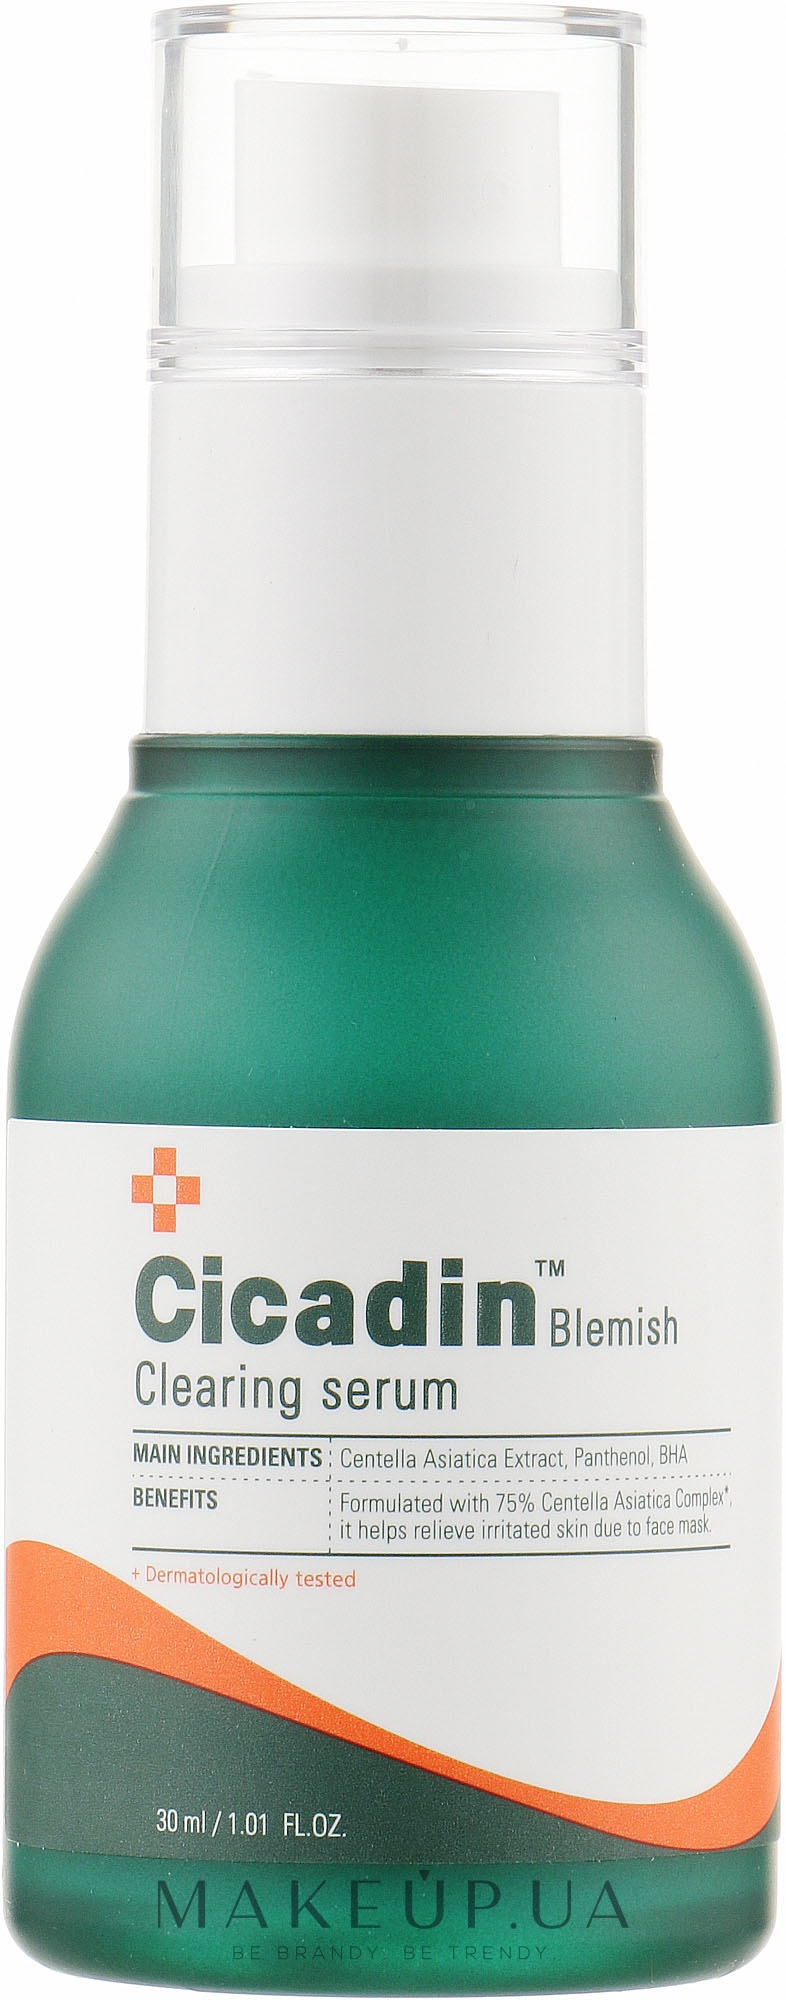 Успокаивающая сыворотка для проблемной кожи - Missha Cicadin Blemish Clearing Serum — фото 30ml